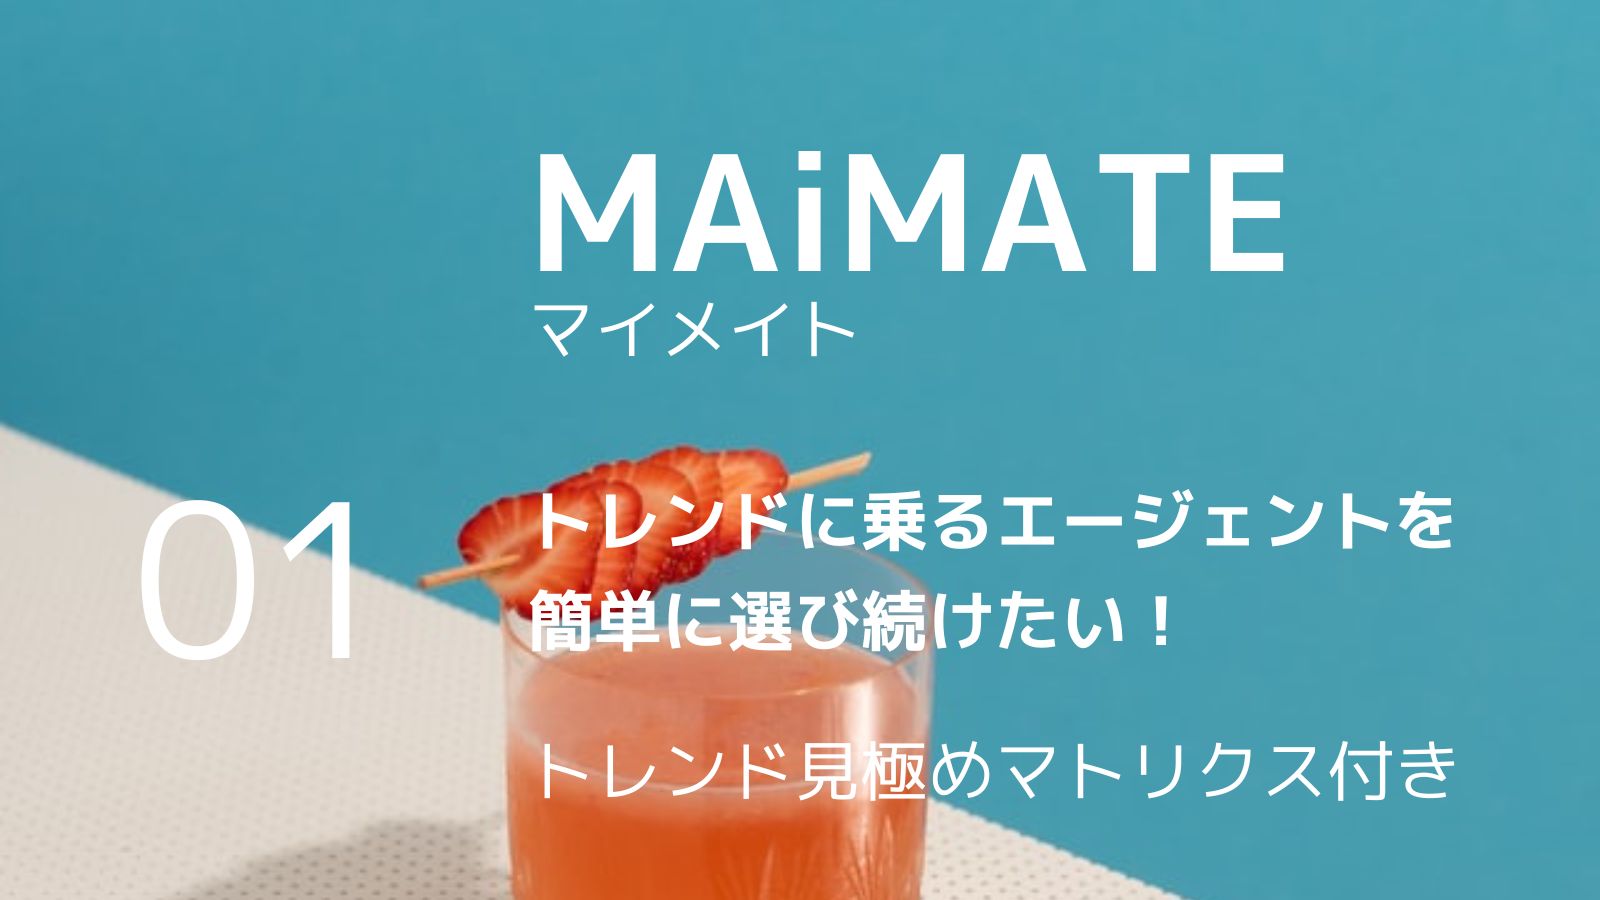 【MAiMATE】マイメイト トレンドに乗るエージェント選び 01